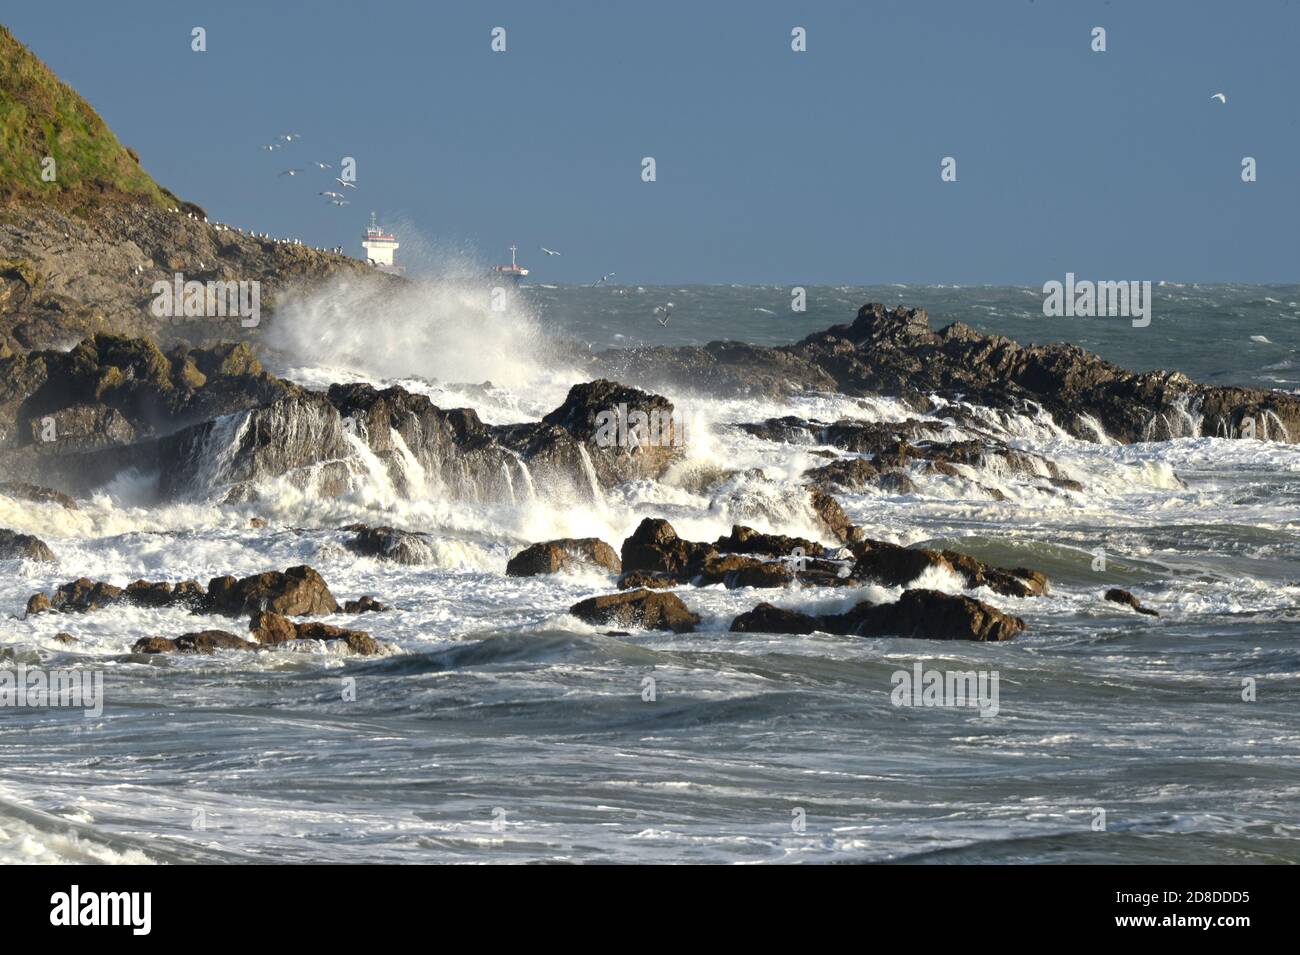 Grandi ondate si surge sulle rocce su questo promontorio su Gower inviando torrenti di acqua sulla terra. Una nave corre la tempesta sullo sfondo Foto Stock